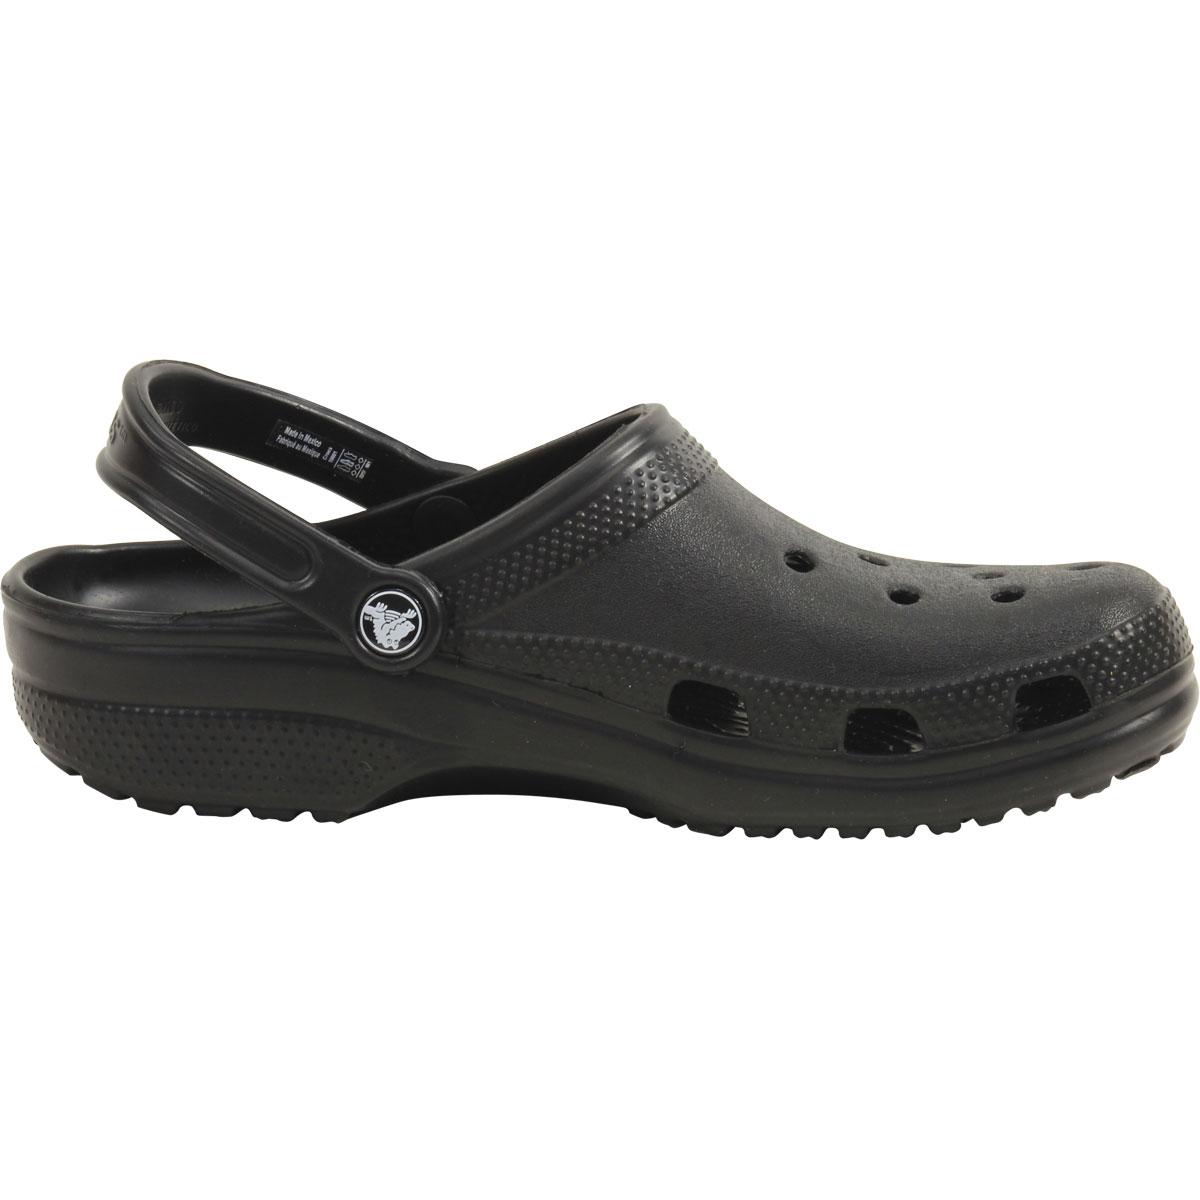 Crocs Men's Original Classic Clogs Sandals Shoes | JoyLot.com